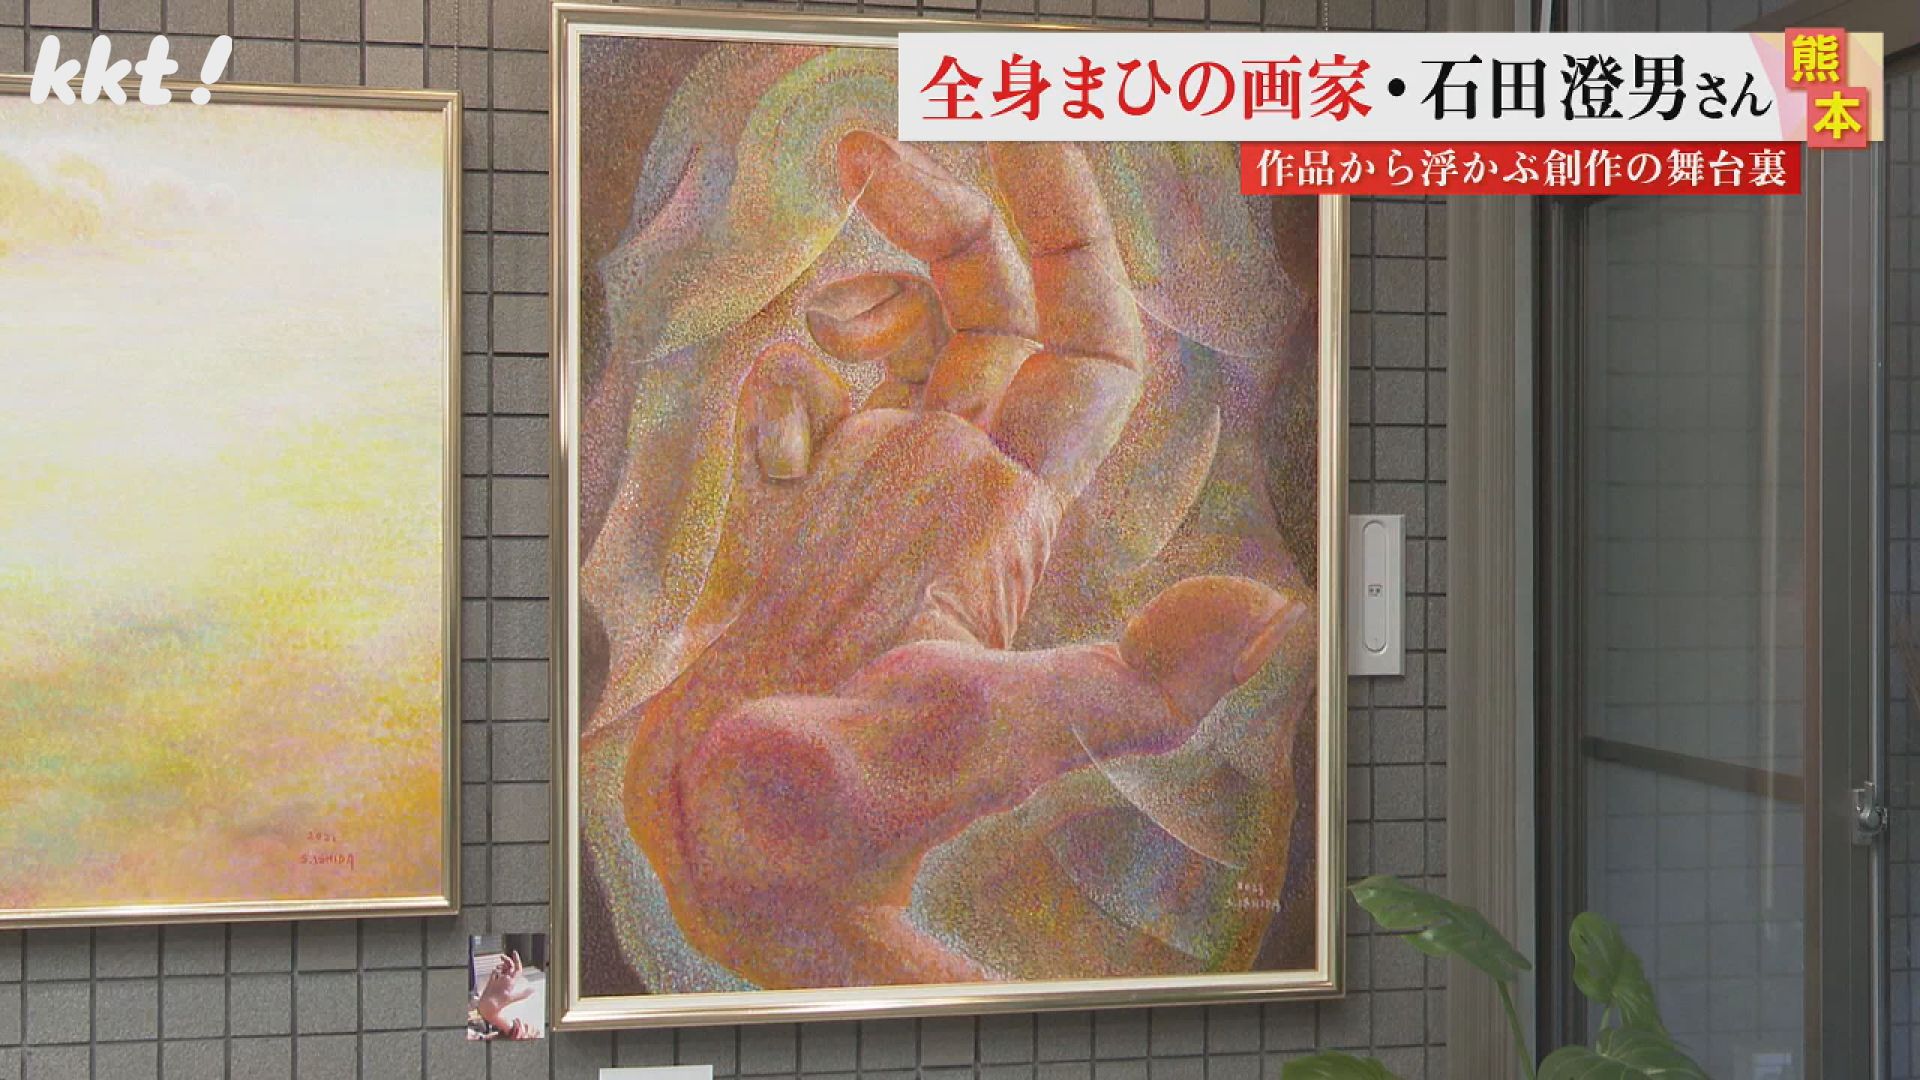 限定 TeijiHayama ネオスクリーン 版画 葉山禎治 シルクスクリーン - 美術品